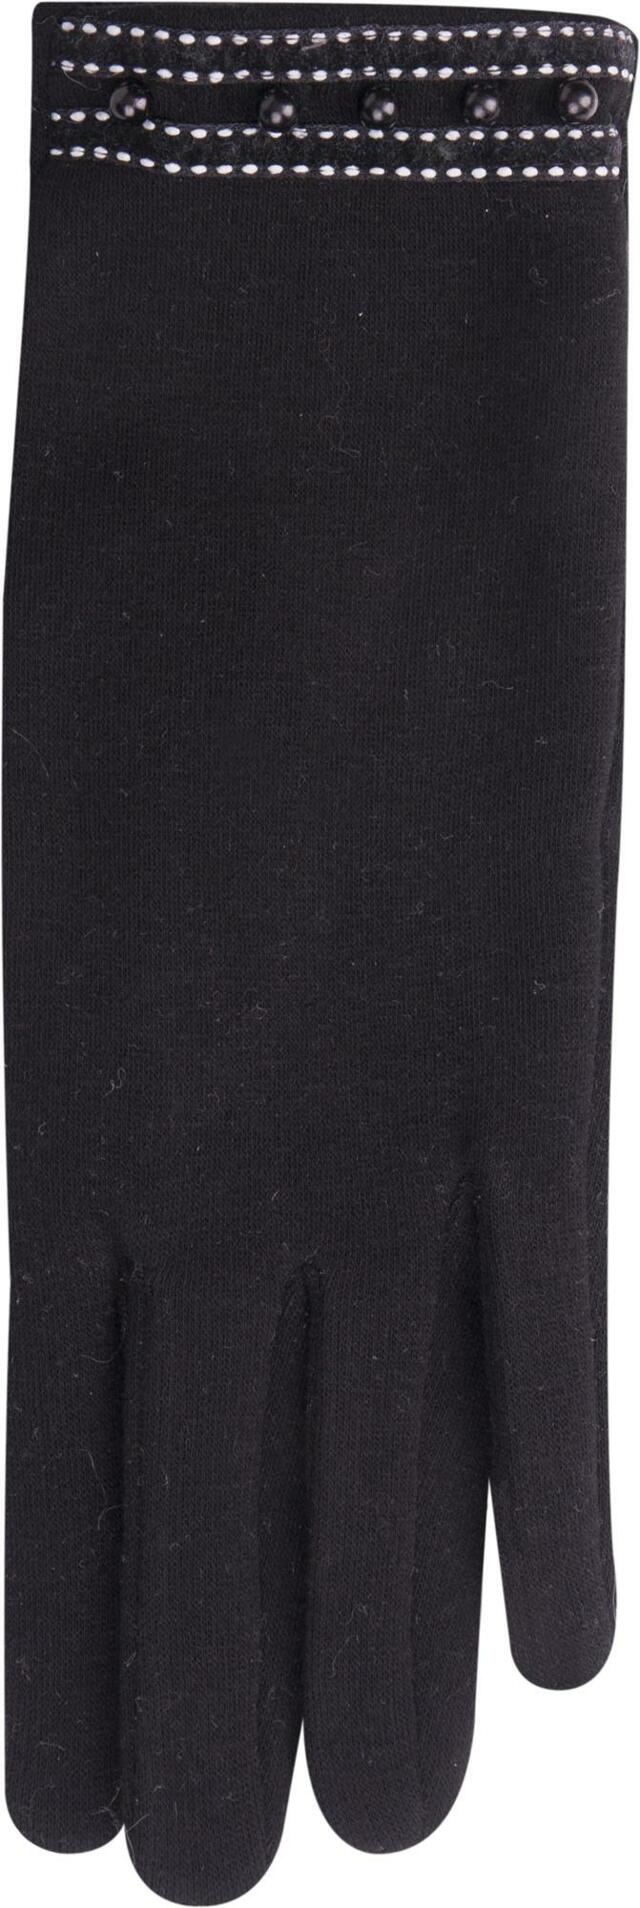 Dámské rukavice R-138 černá - Yoclub - 24 cm - černá